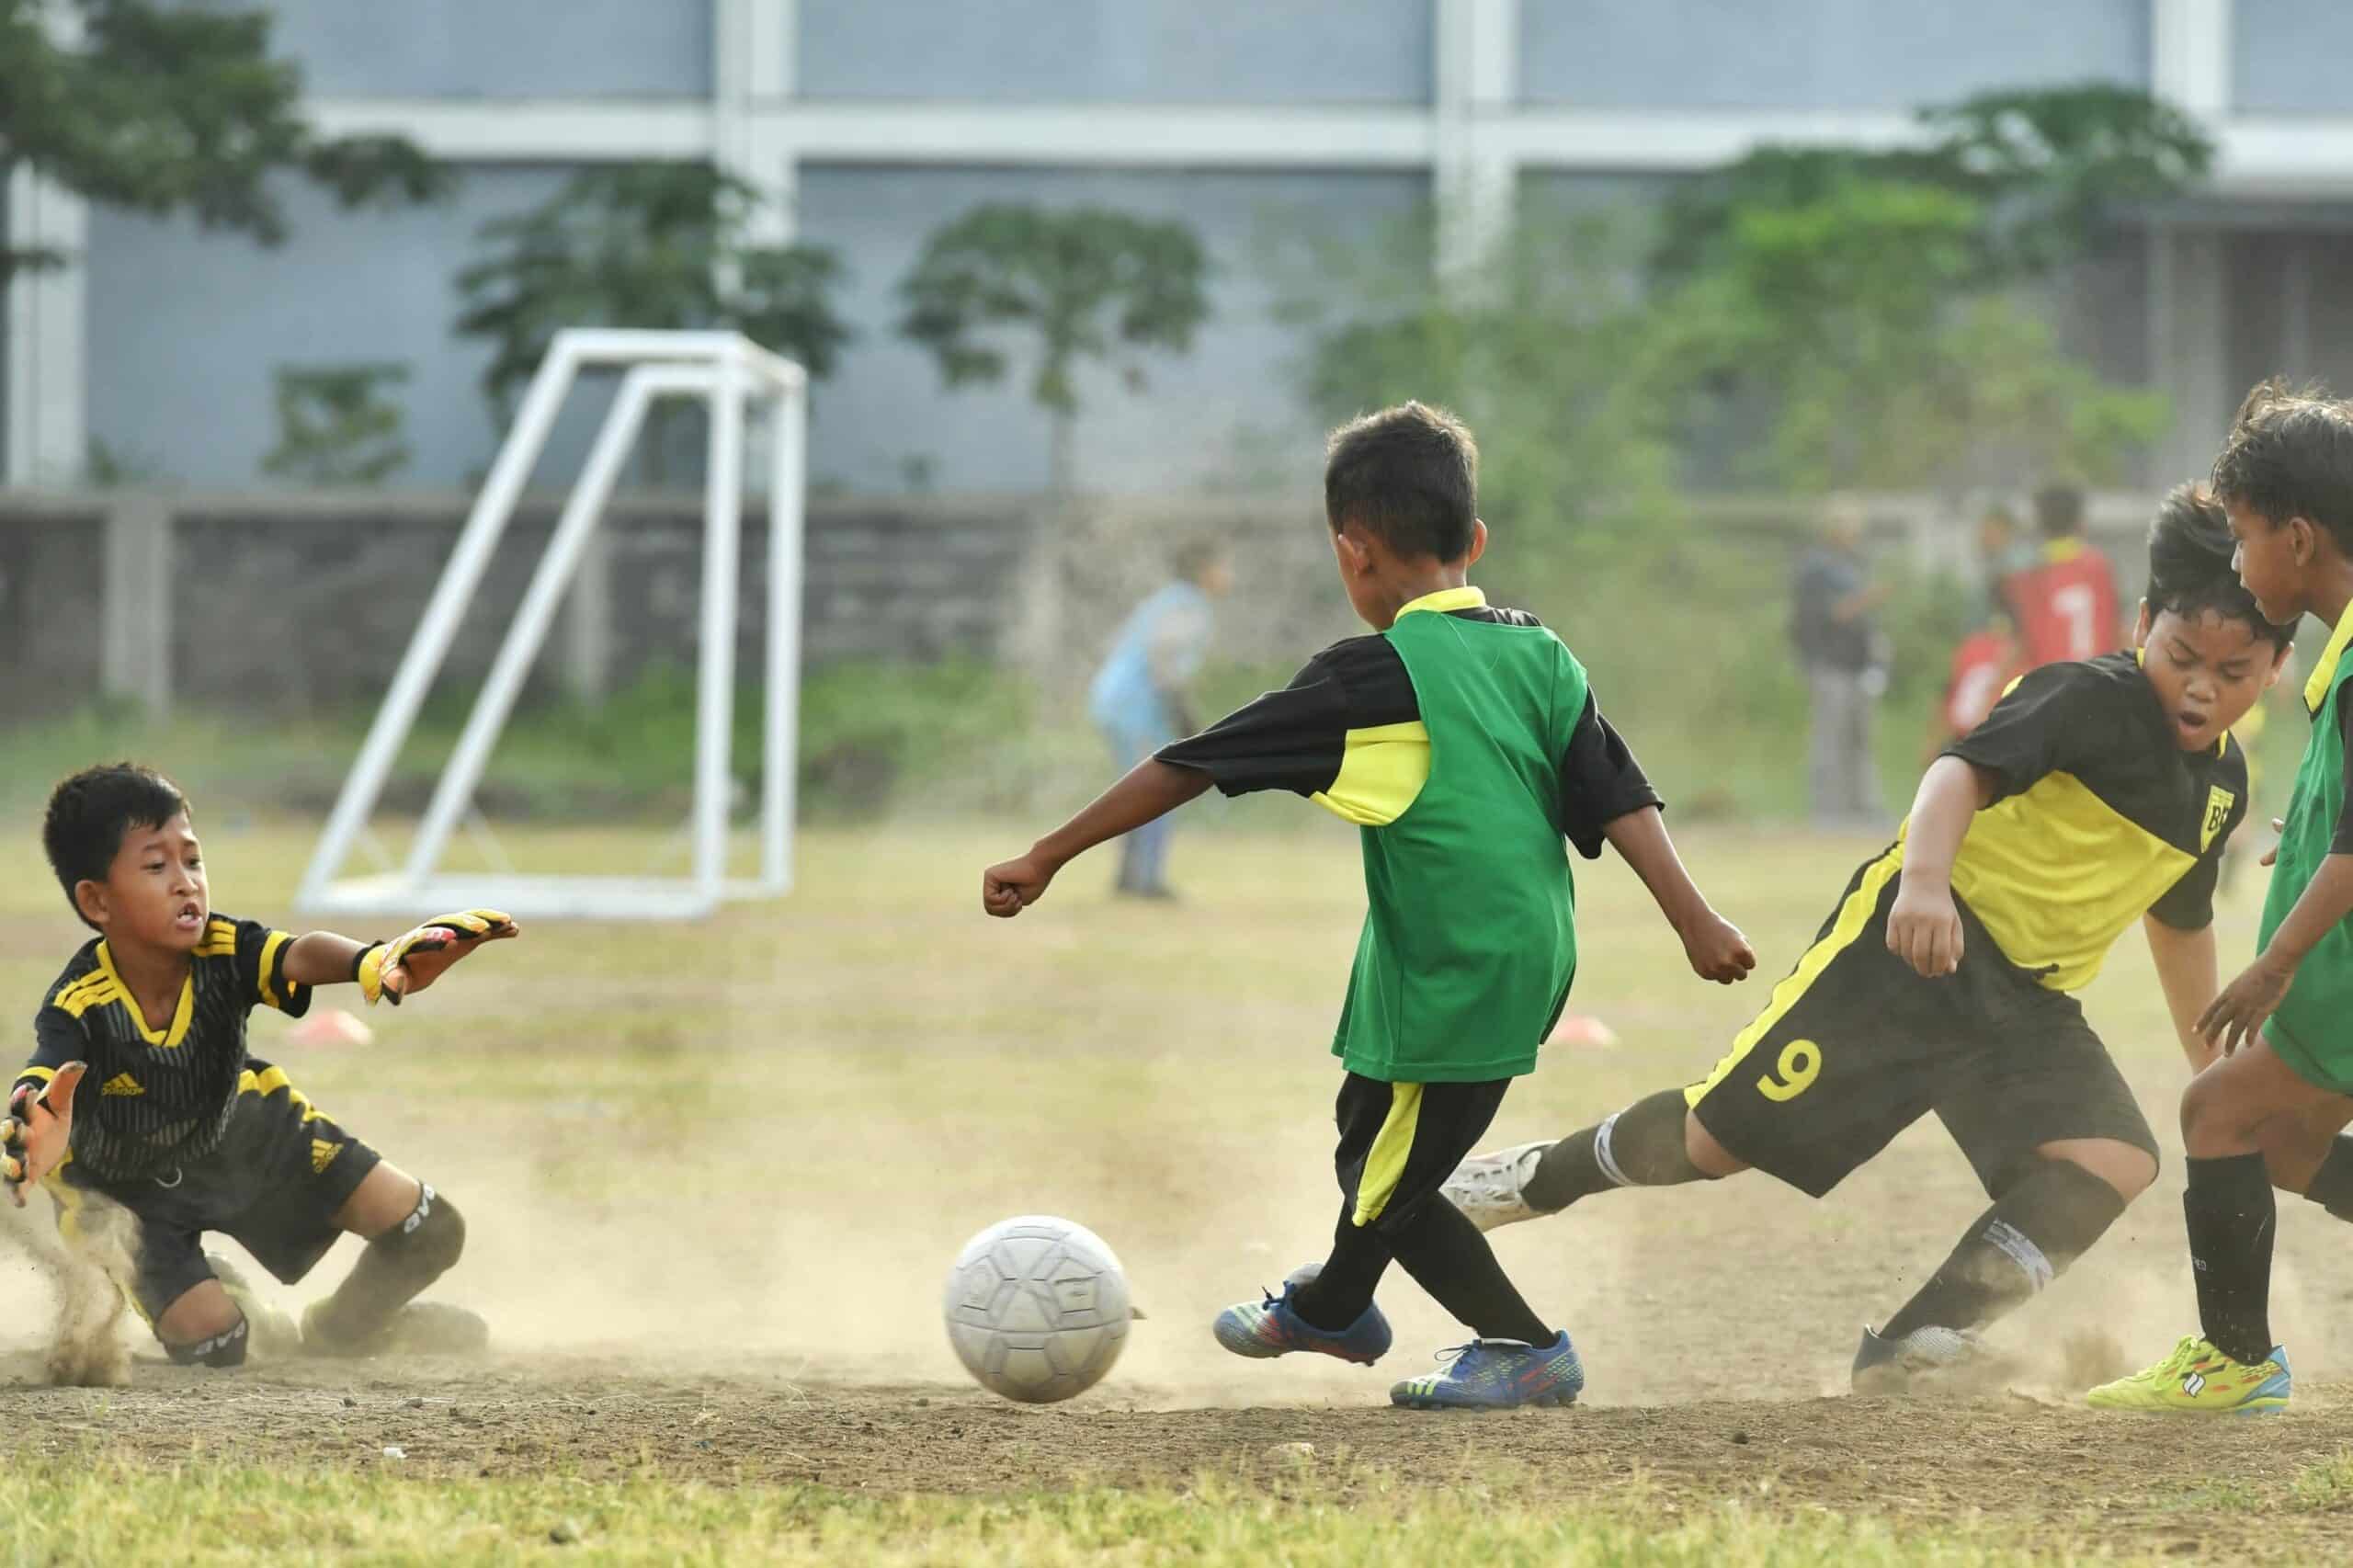 Bola dan Sepakbola: Memahami Perbedaan yang Mendasar